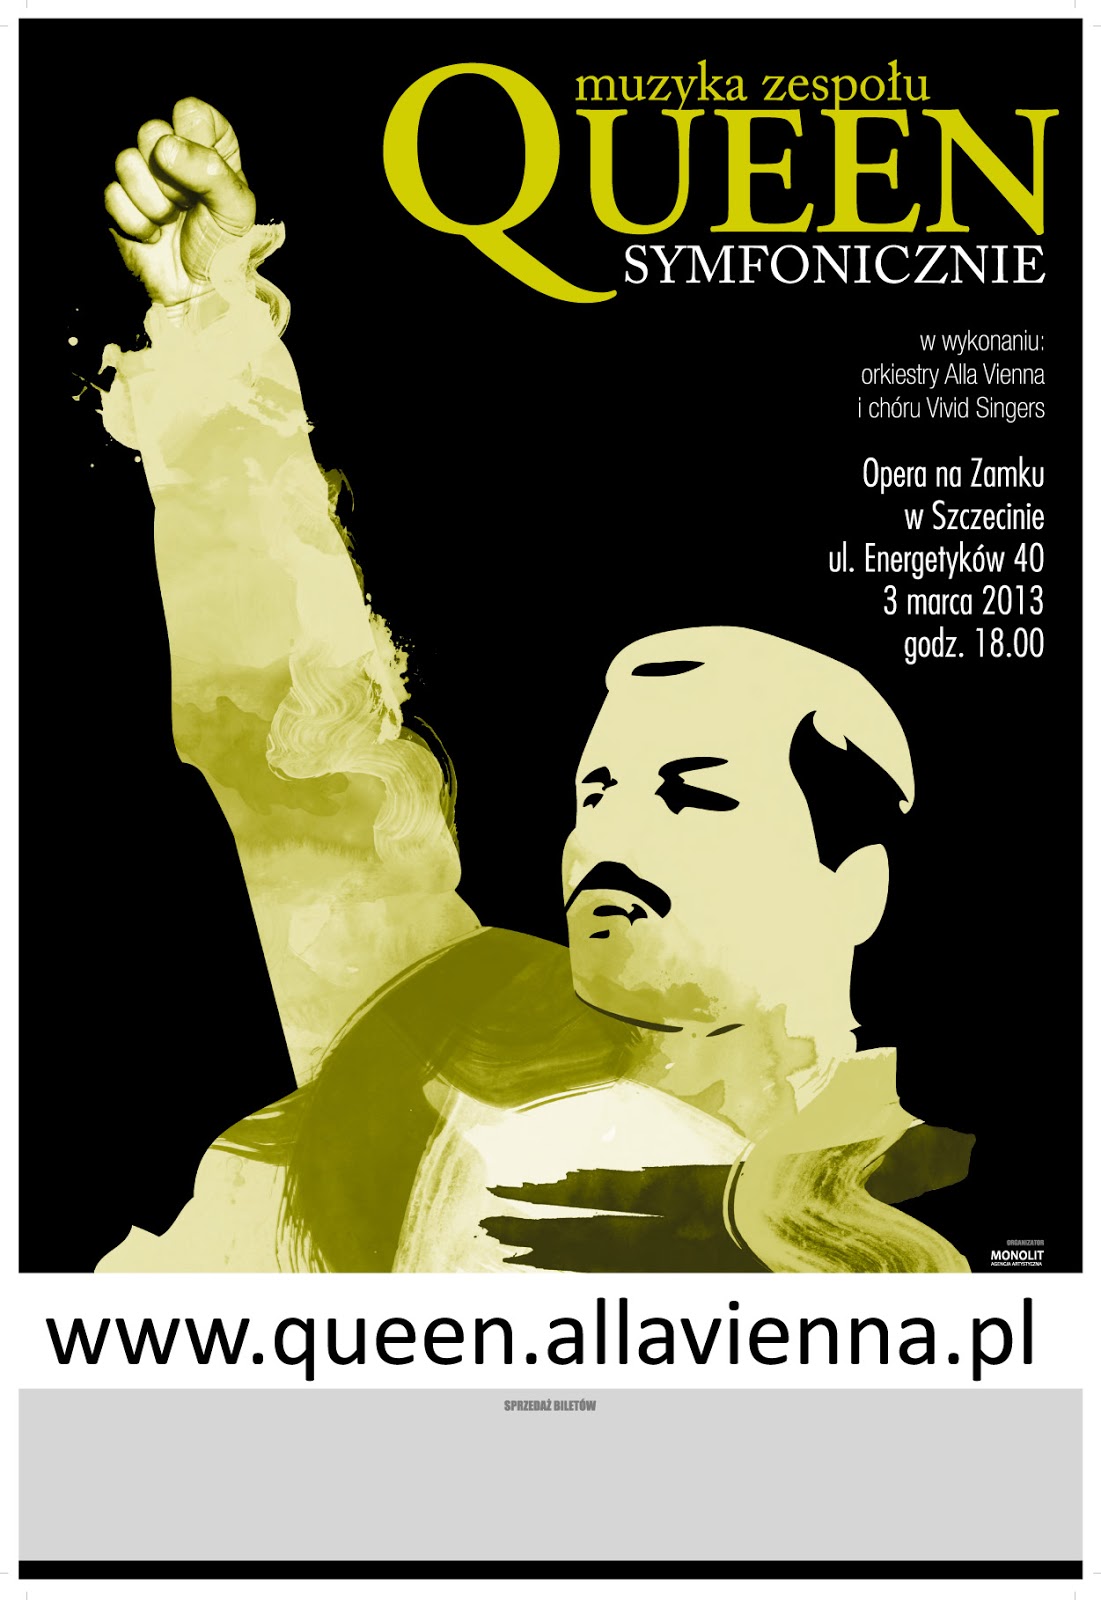 Queen Symfonicznie wystąpi w Szczecinie! Sezon koncertowy 2012 zakończony wyprzedanym koncertem w Lublinie!